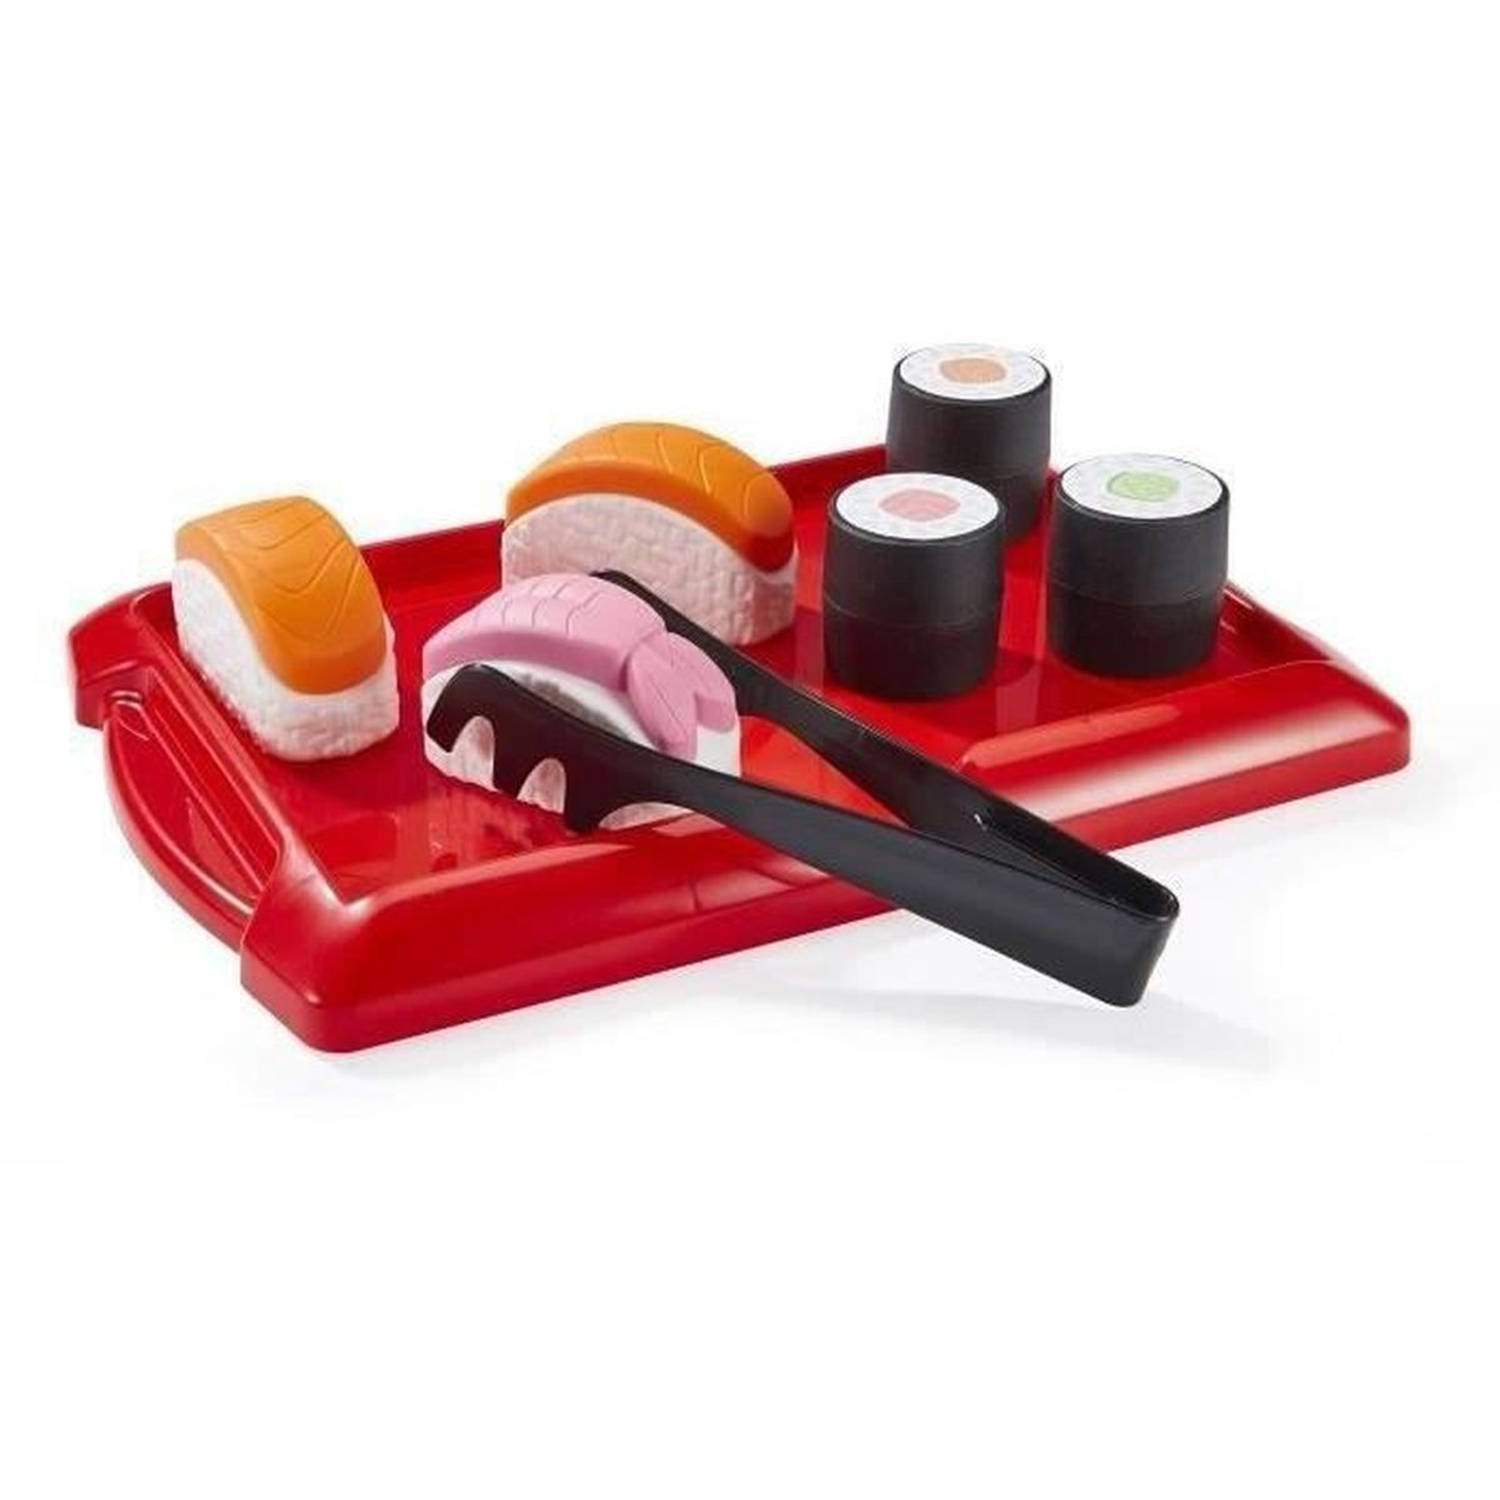 Imitatiespellen: Sushi koken - ECOIFFIER - 2523